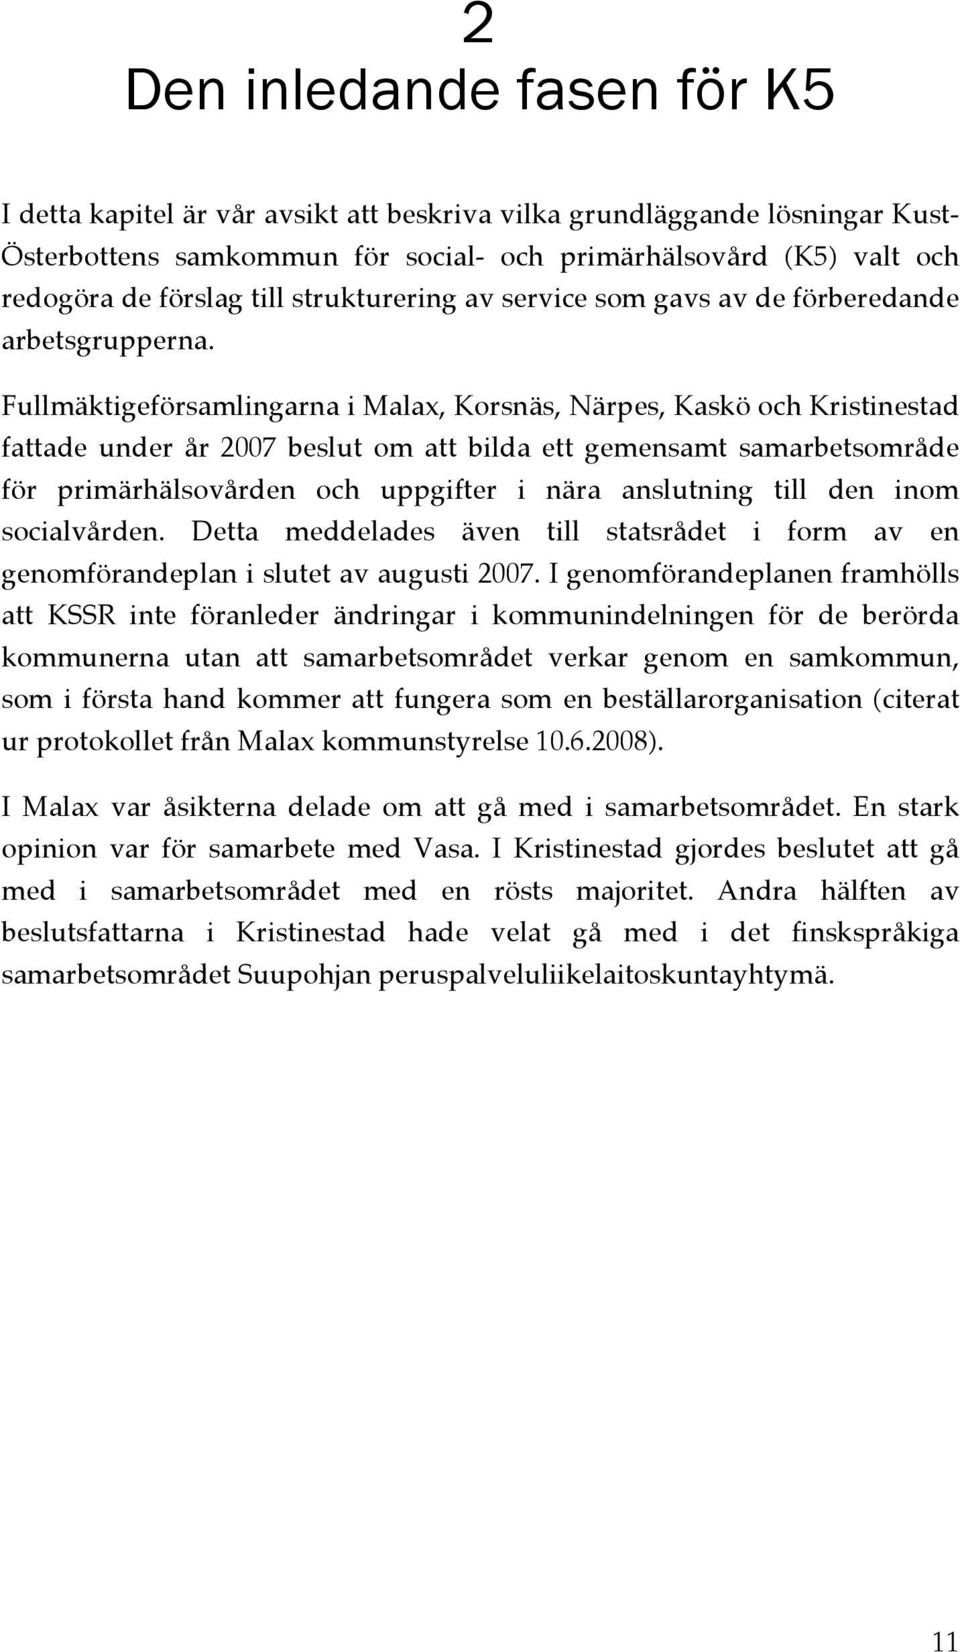 Fullmäktigeförsamlingarna i Malax, Korsnäs, Närpes, Kaskö och Kristinestad fattade under år 2007 beslut om att bilda ett gemensamt samarbetsområde för primärhälsovården och uppgifter i nära